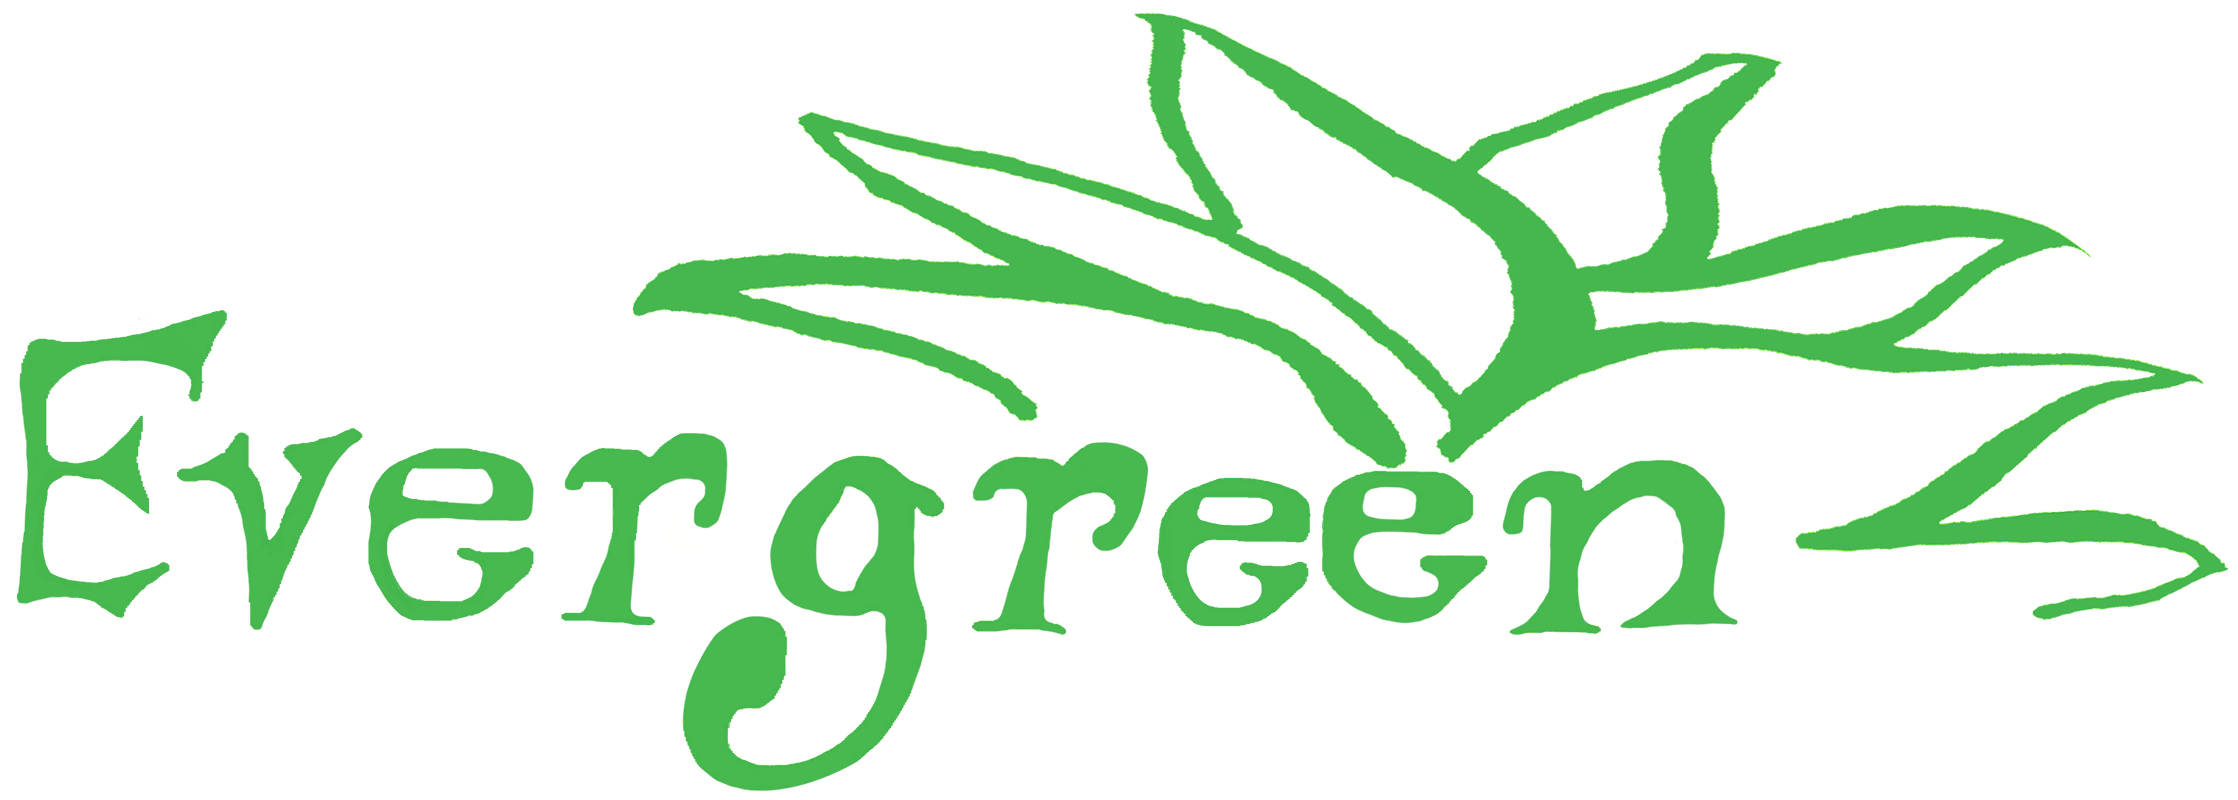 Company logo of Evergreen Garden Center Inc.